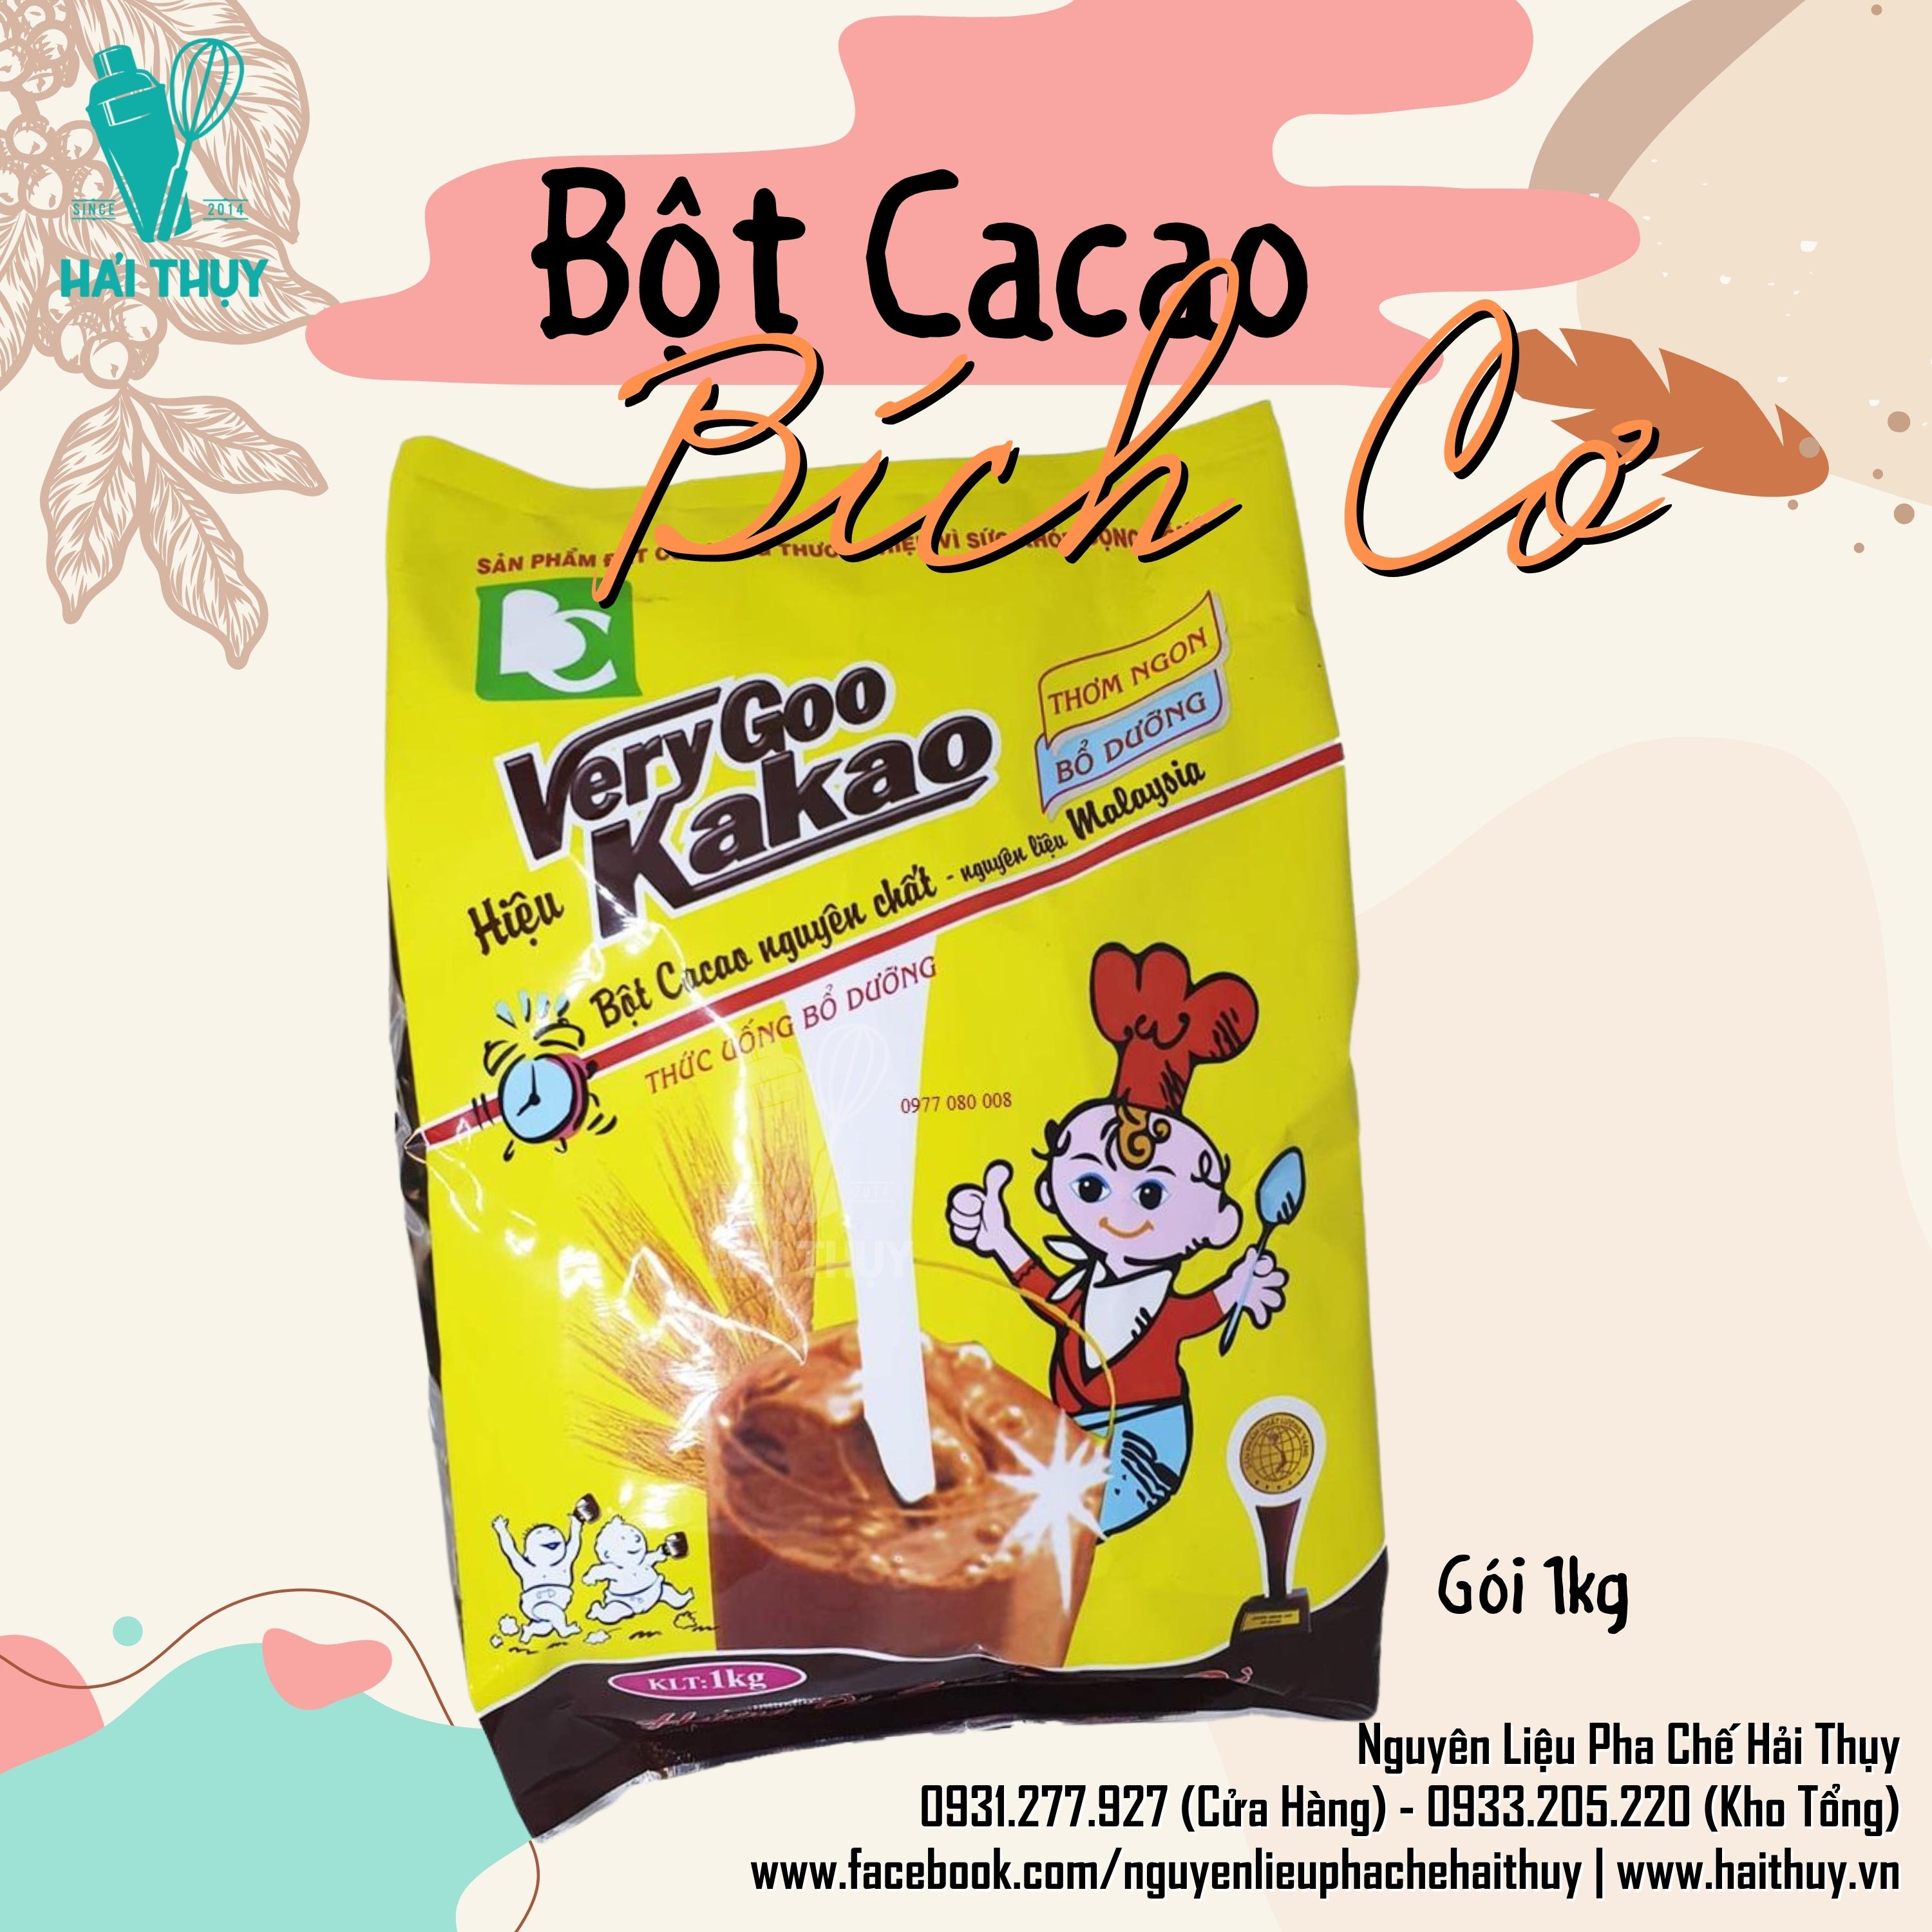 Bột Cacao Đắng Bích Cơ Very Good Kakao Gói 1kg